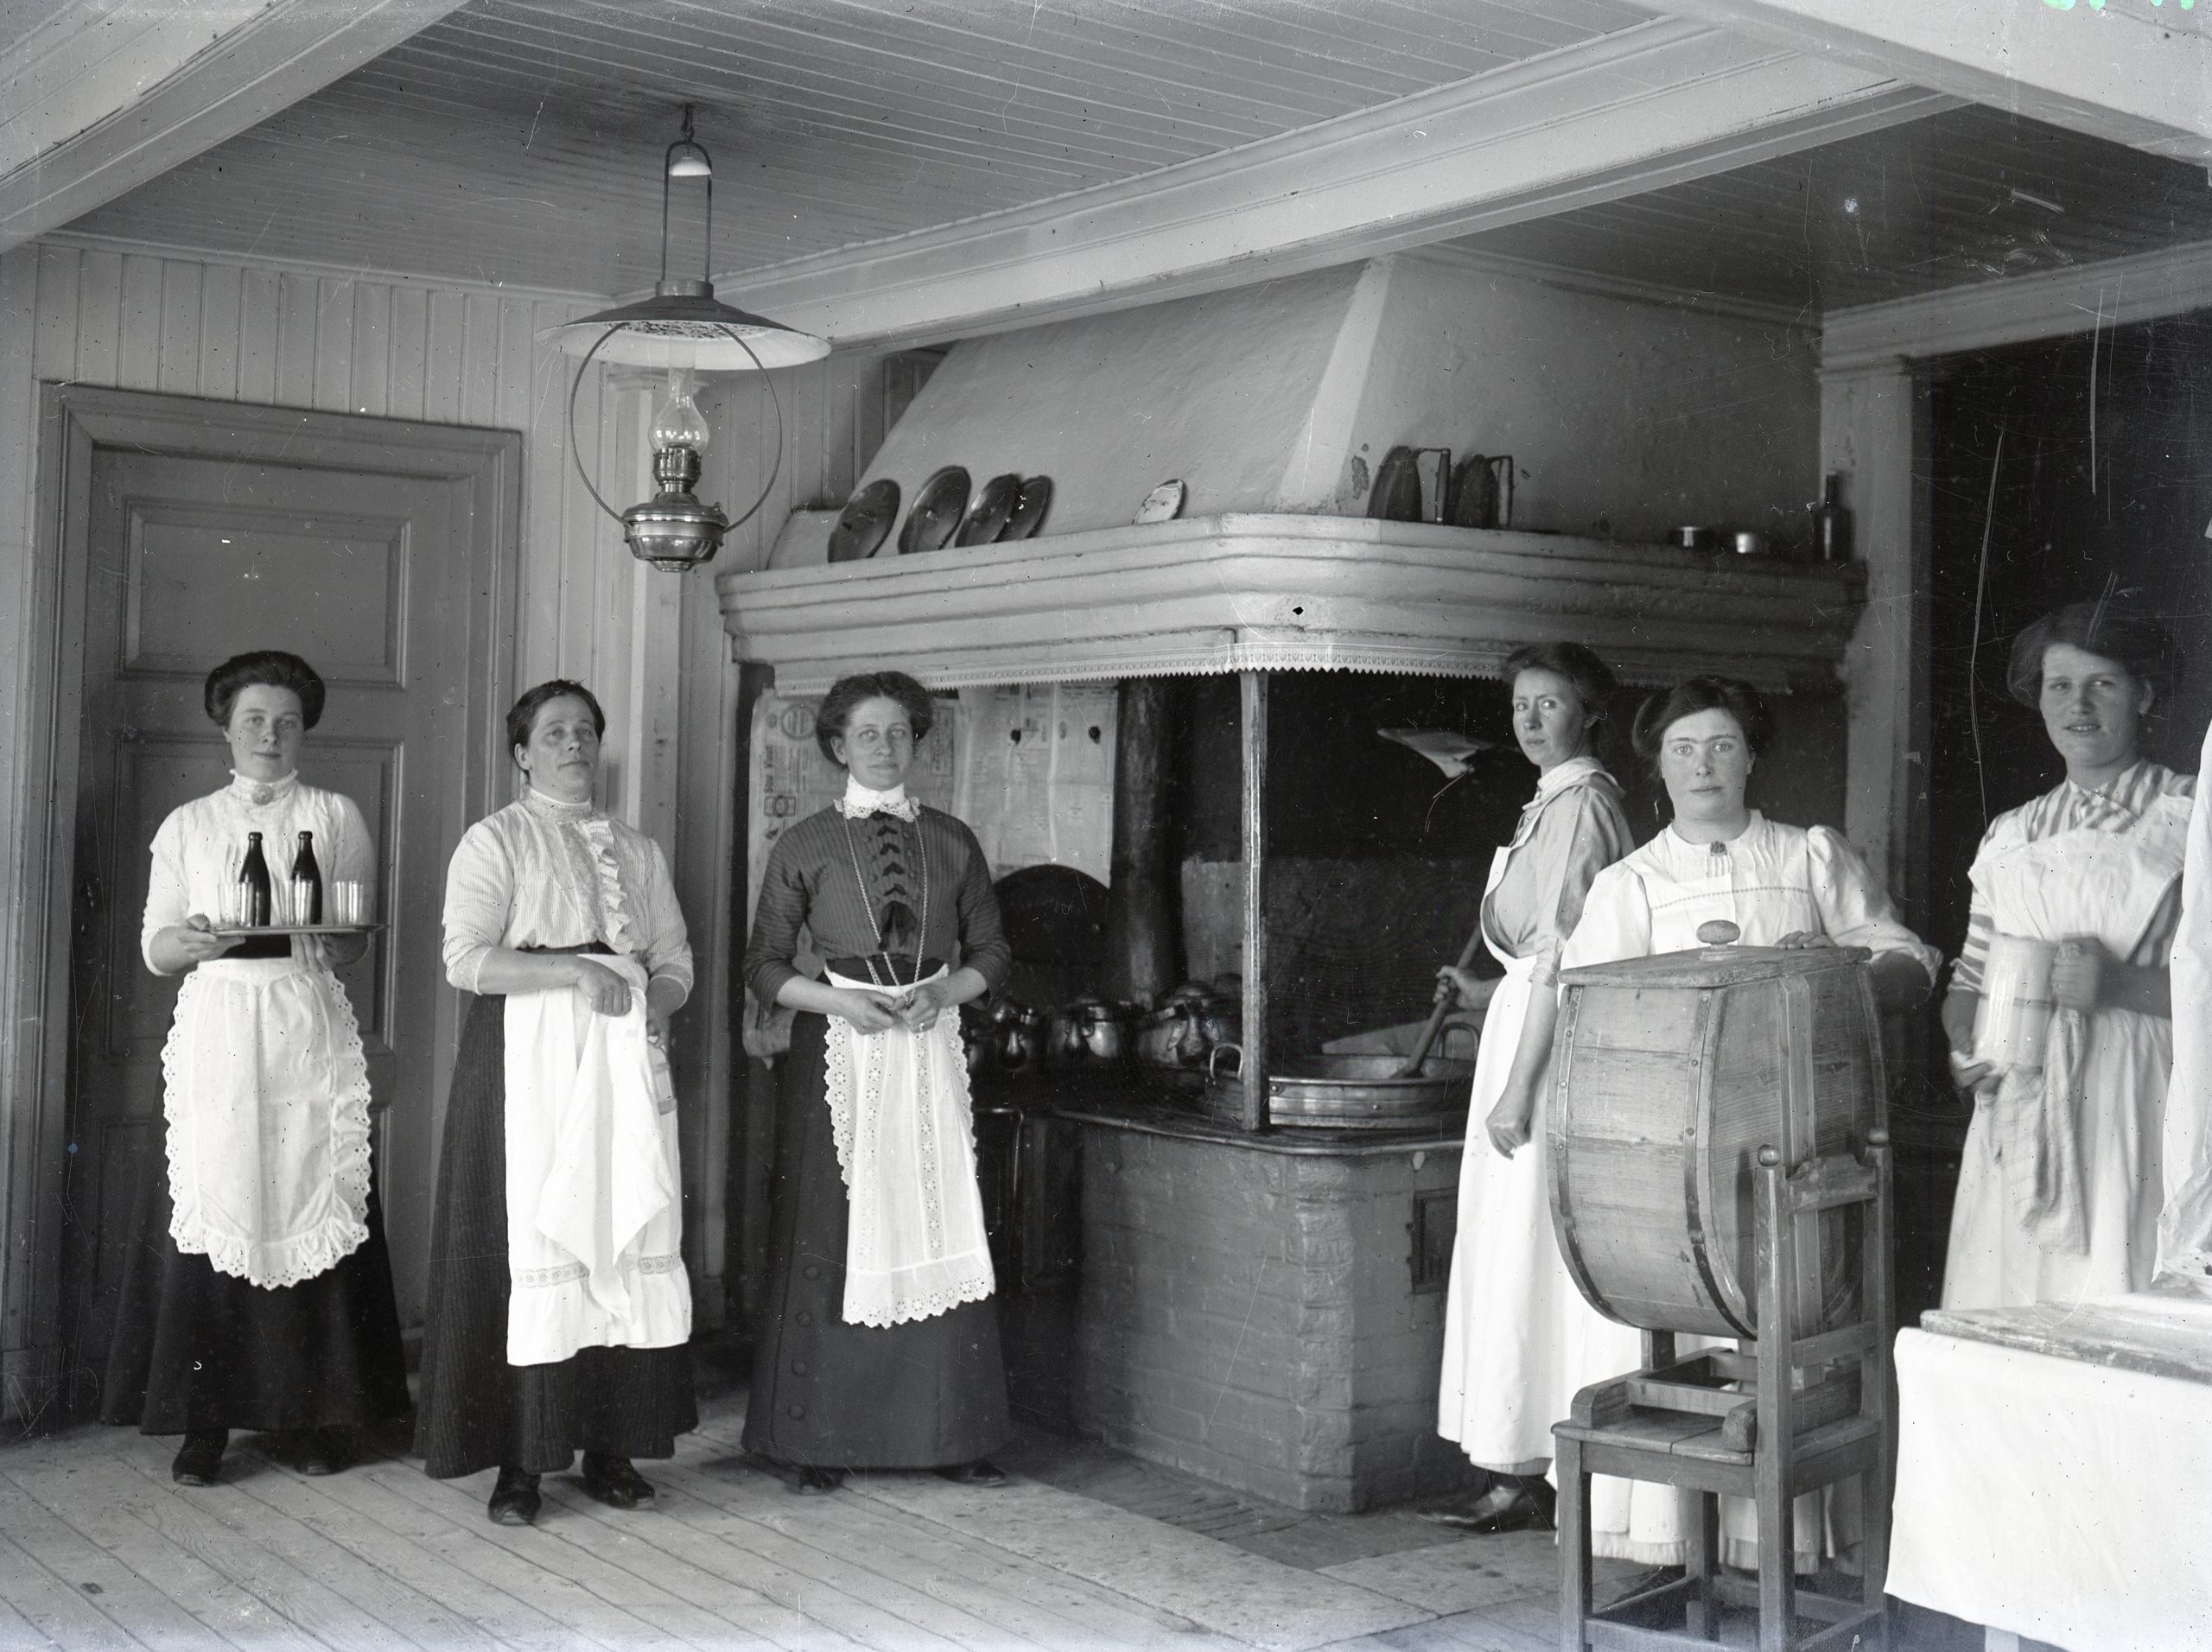 Svartvitt foto av köksinteiör. Vid en stor murad spis med kåpa står sex kvinnor i vita förkläden.